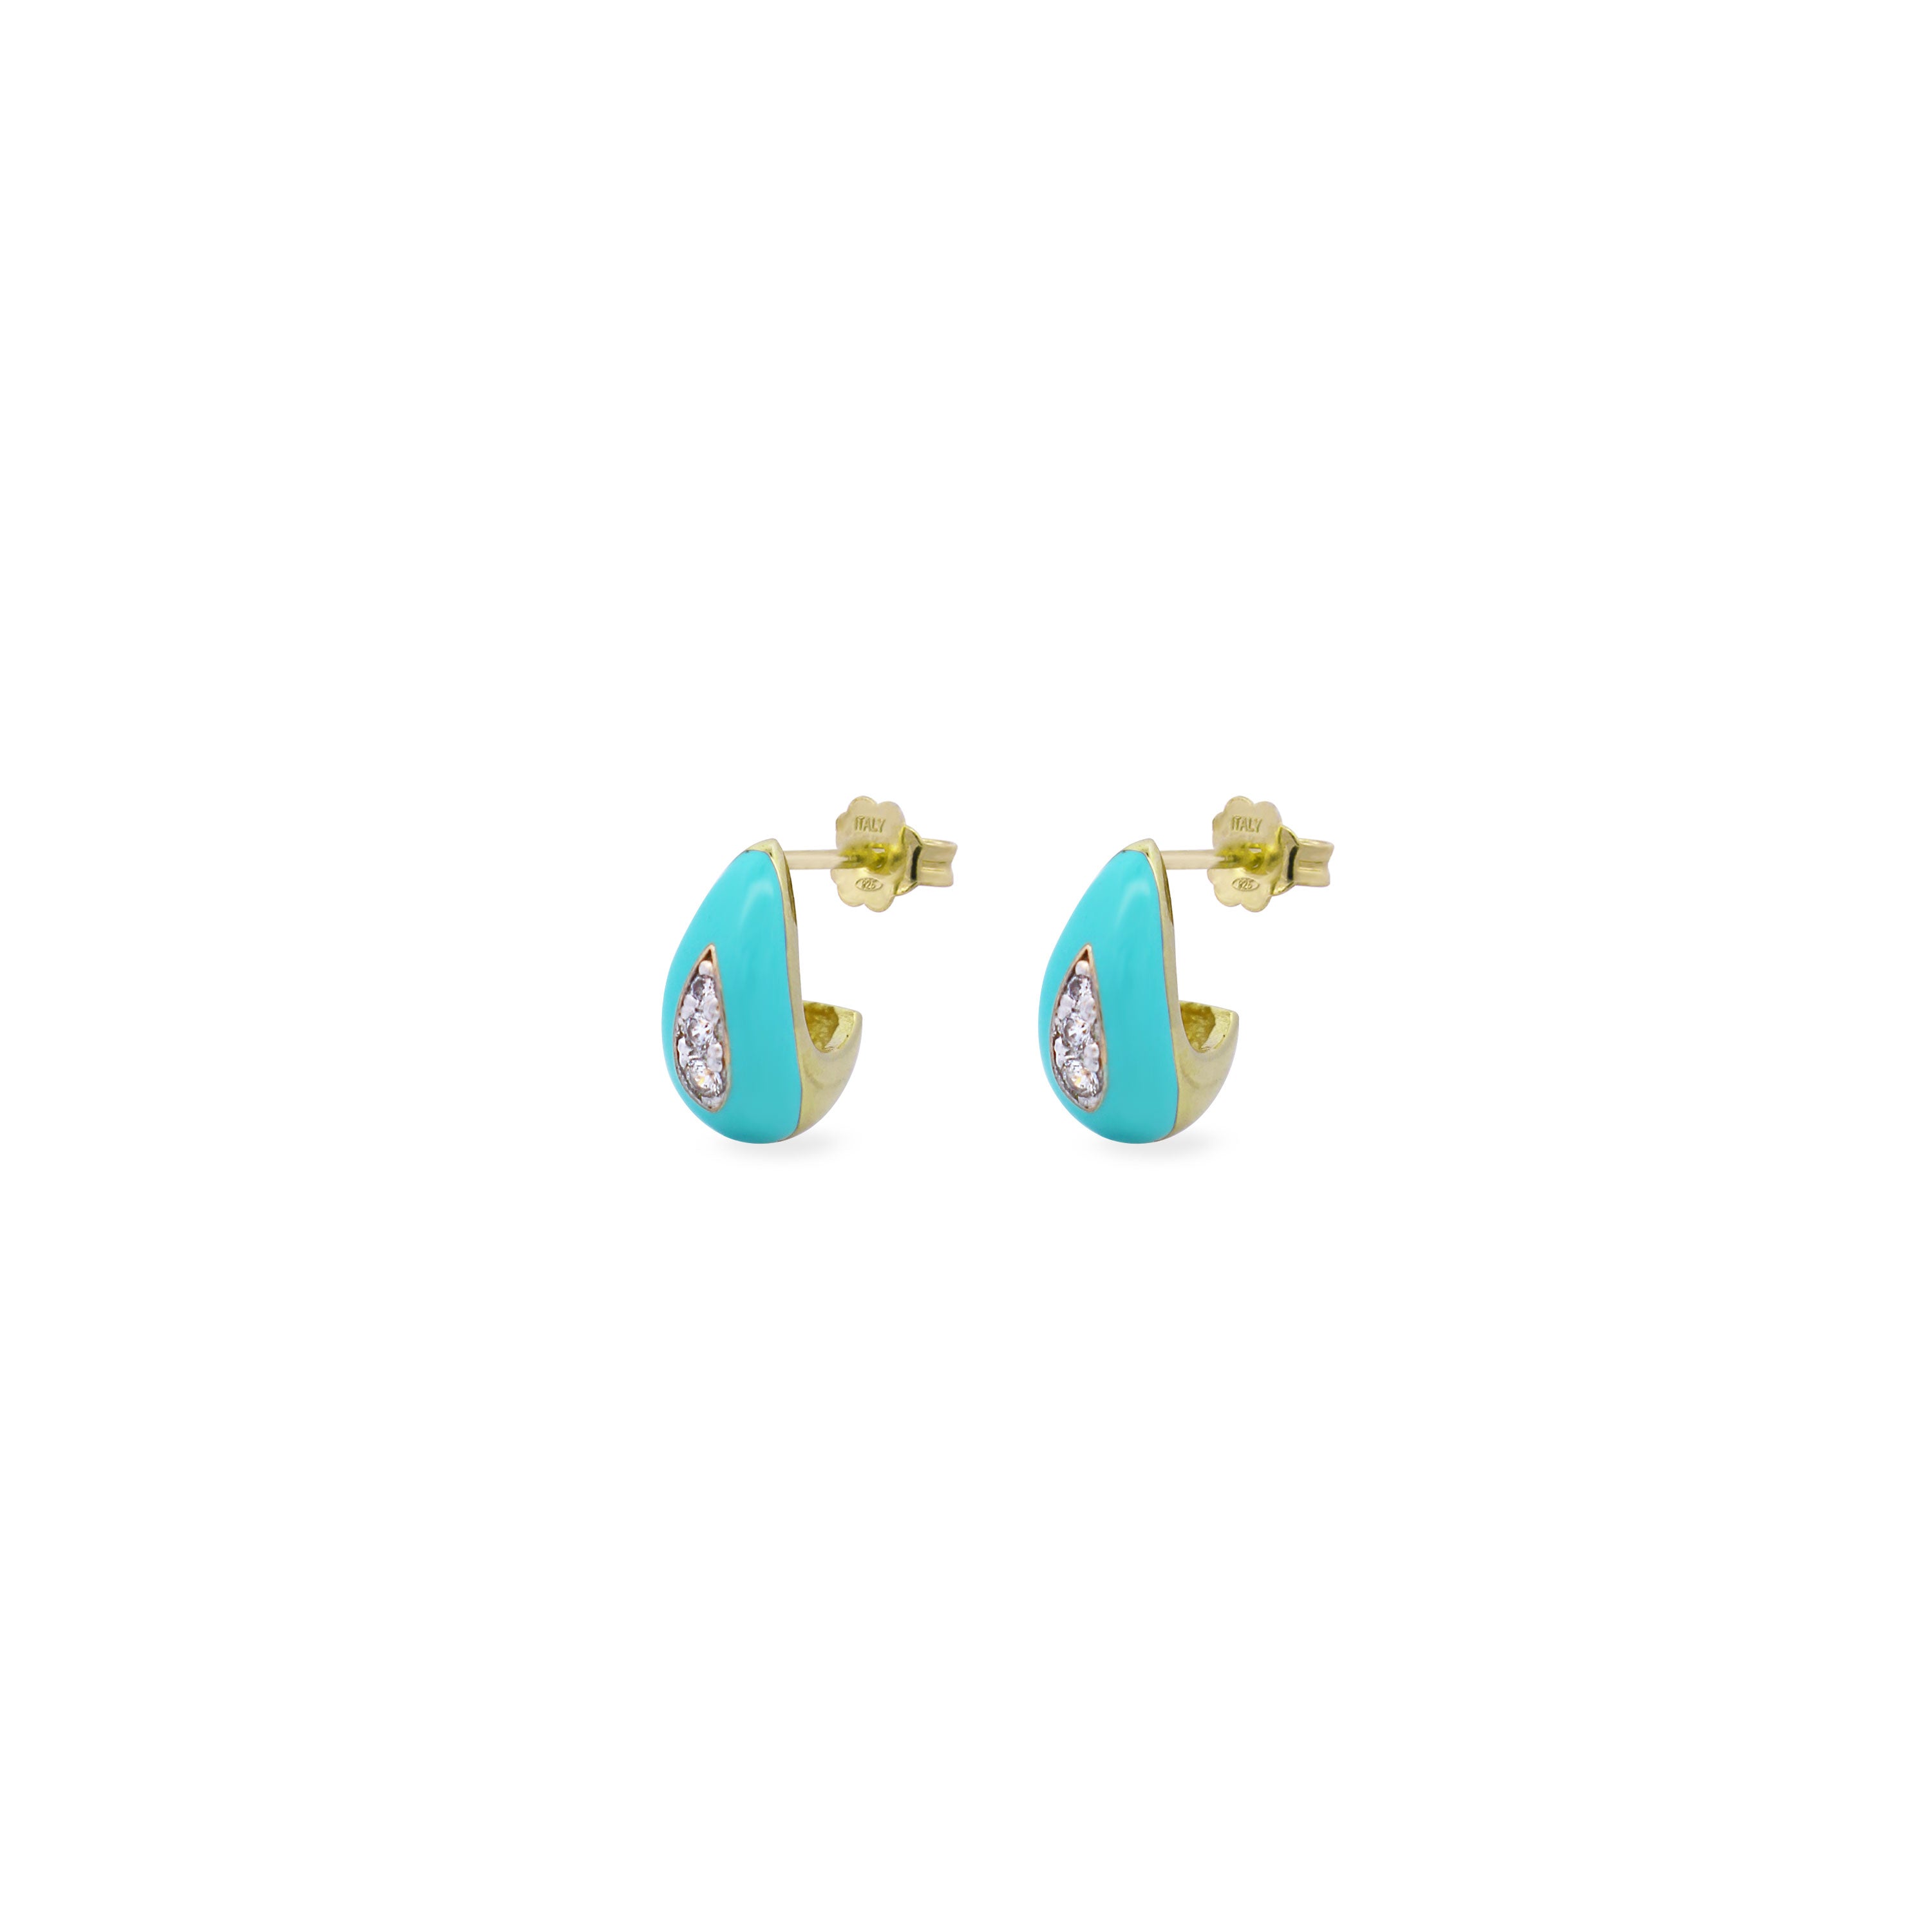 Pair of enameled drop earrings - ColorFUN